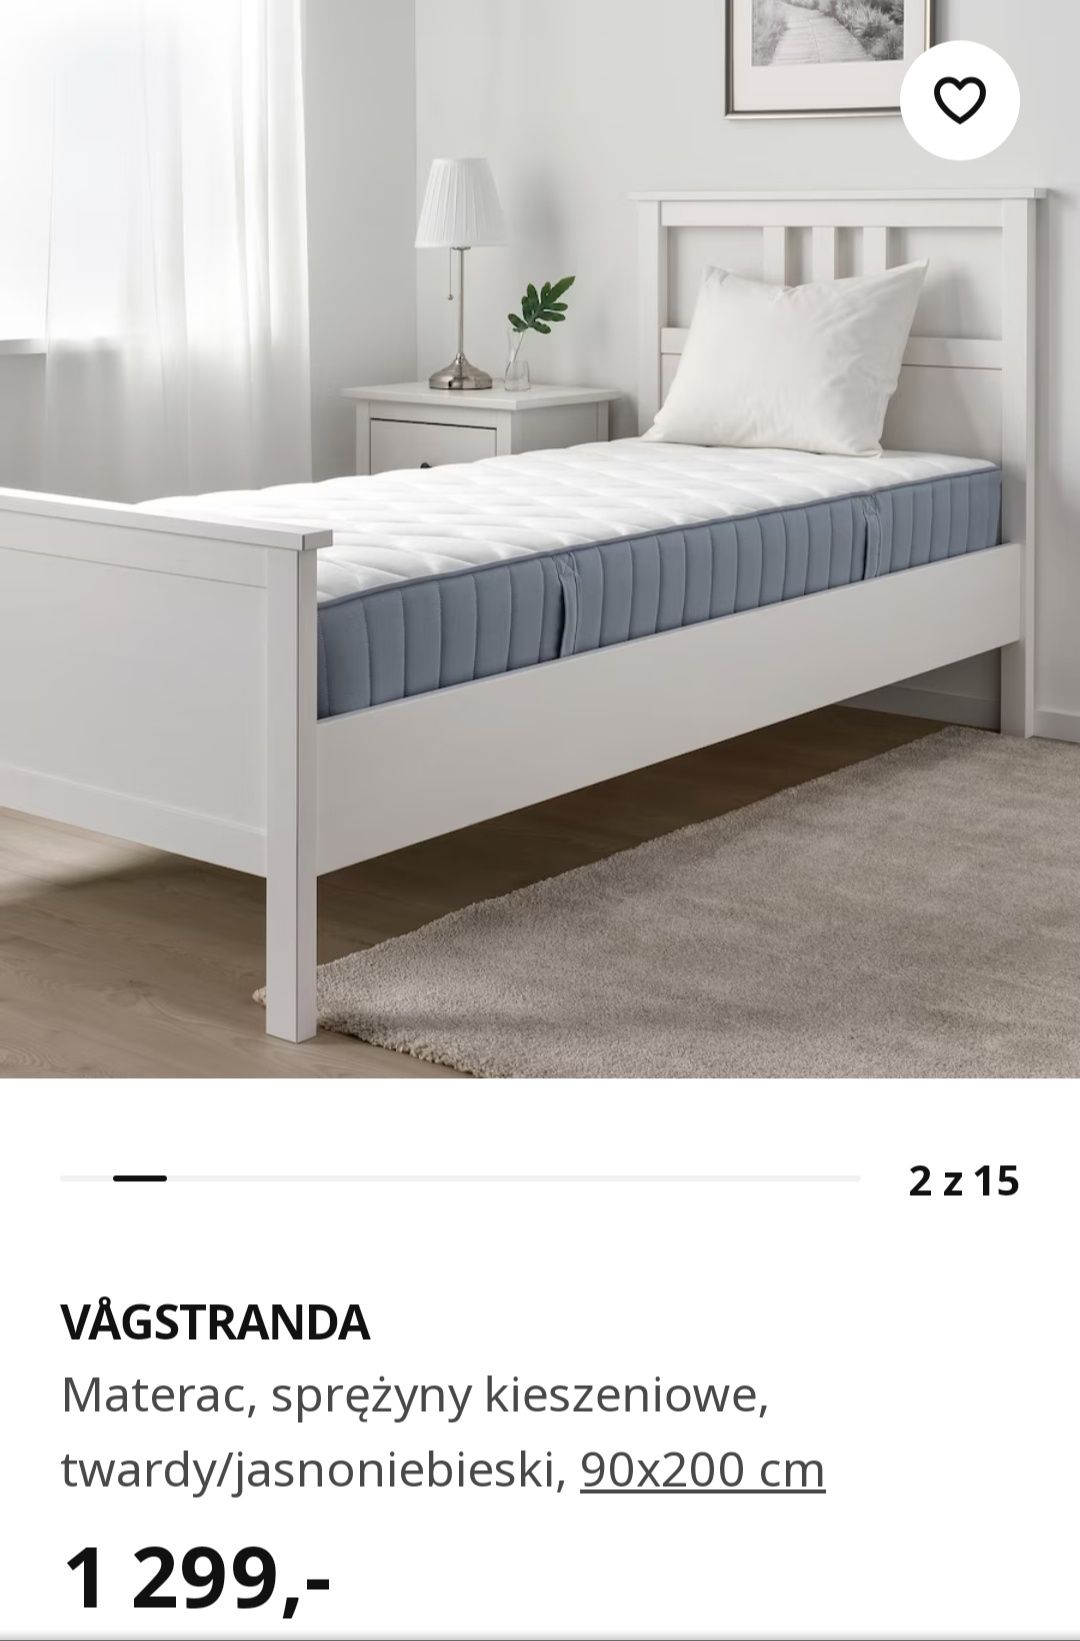 Nowy 1/2ceny Najwyższej półki Materac dwuwarstwowy VÅGSTRANDA Ikea